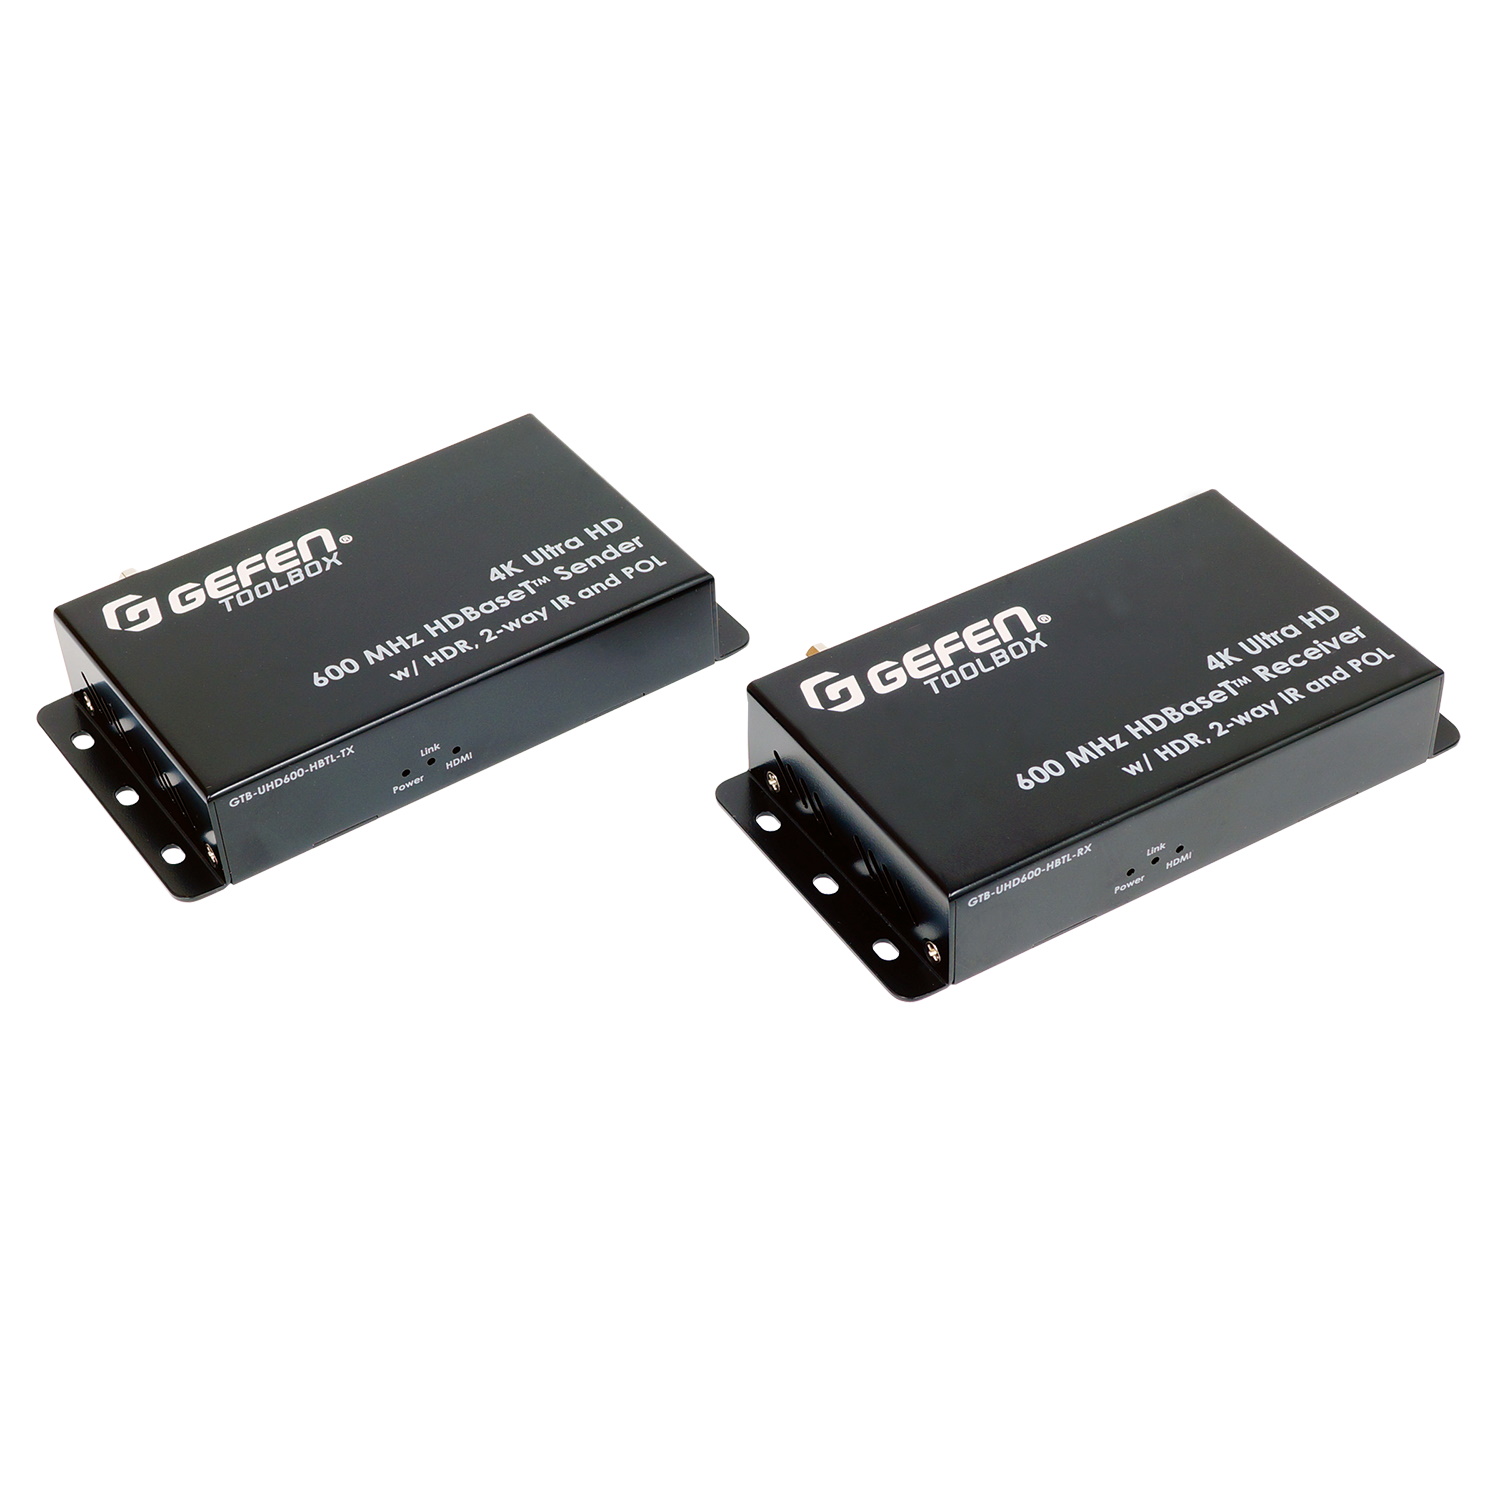 HDMI коммутаторы, разветвители, повторители Gefen GTB-UHD600-HBTL hdmi коммутаторы разветвители повторители dr hd дополнительный приемник для dr hd ex 100 lir